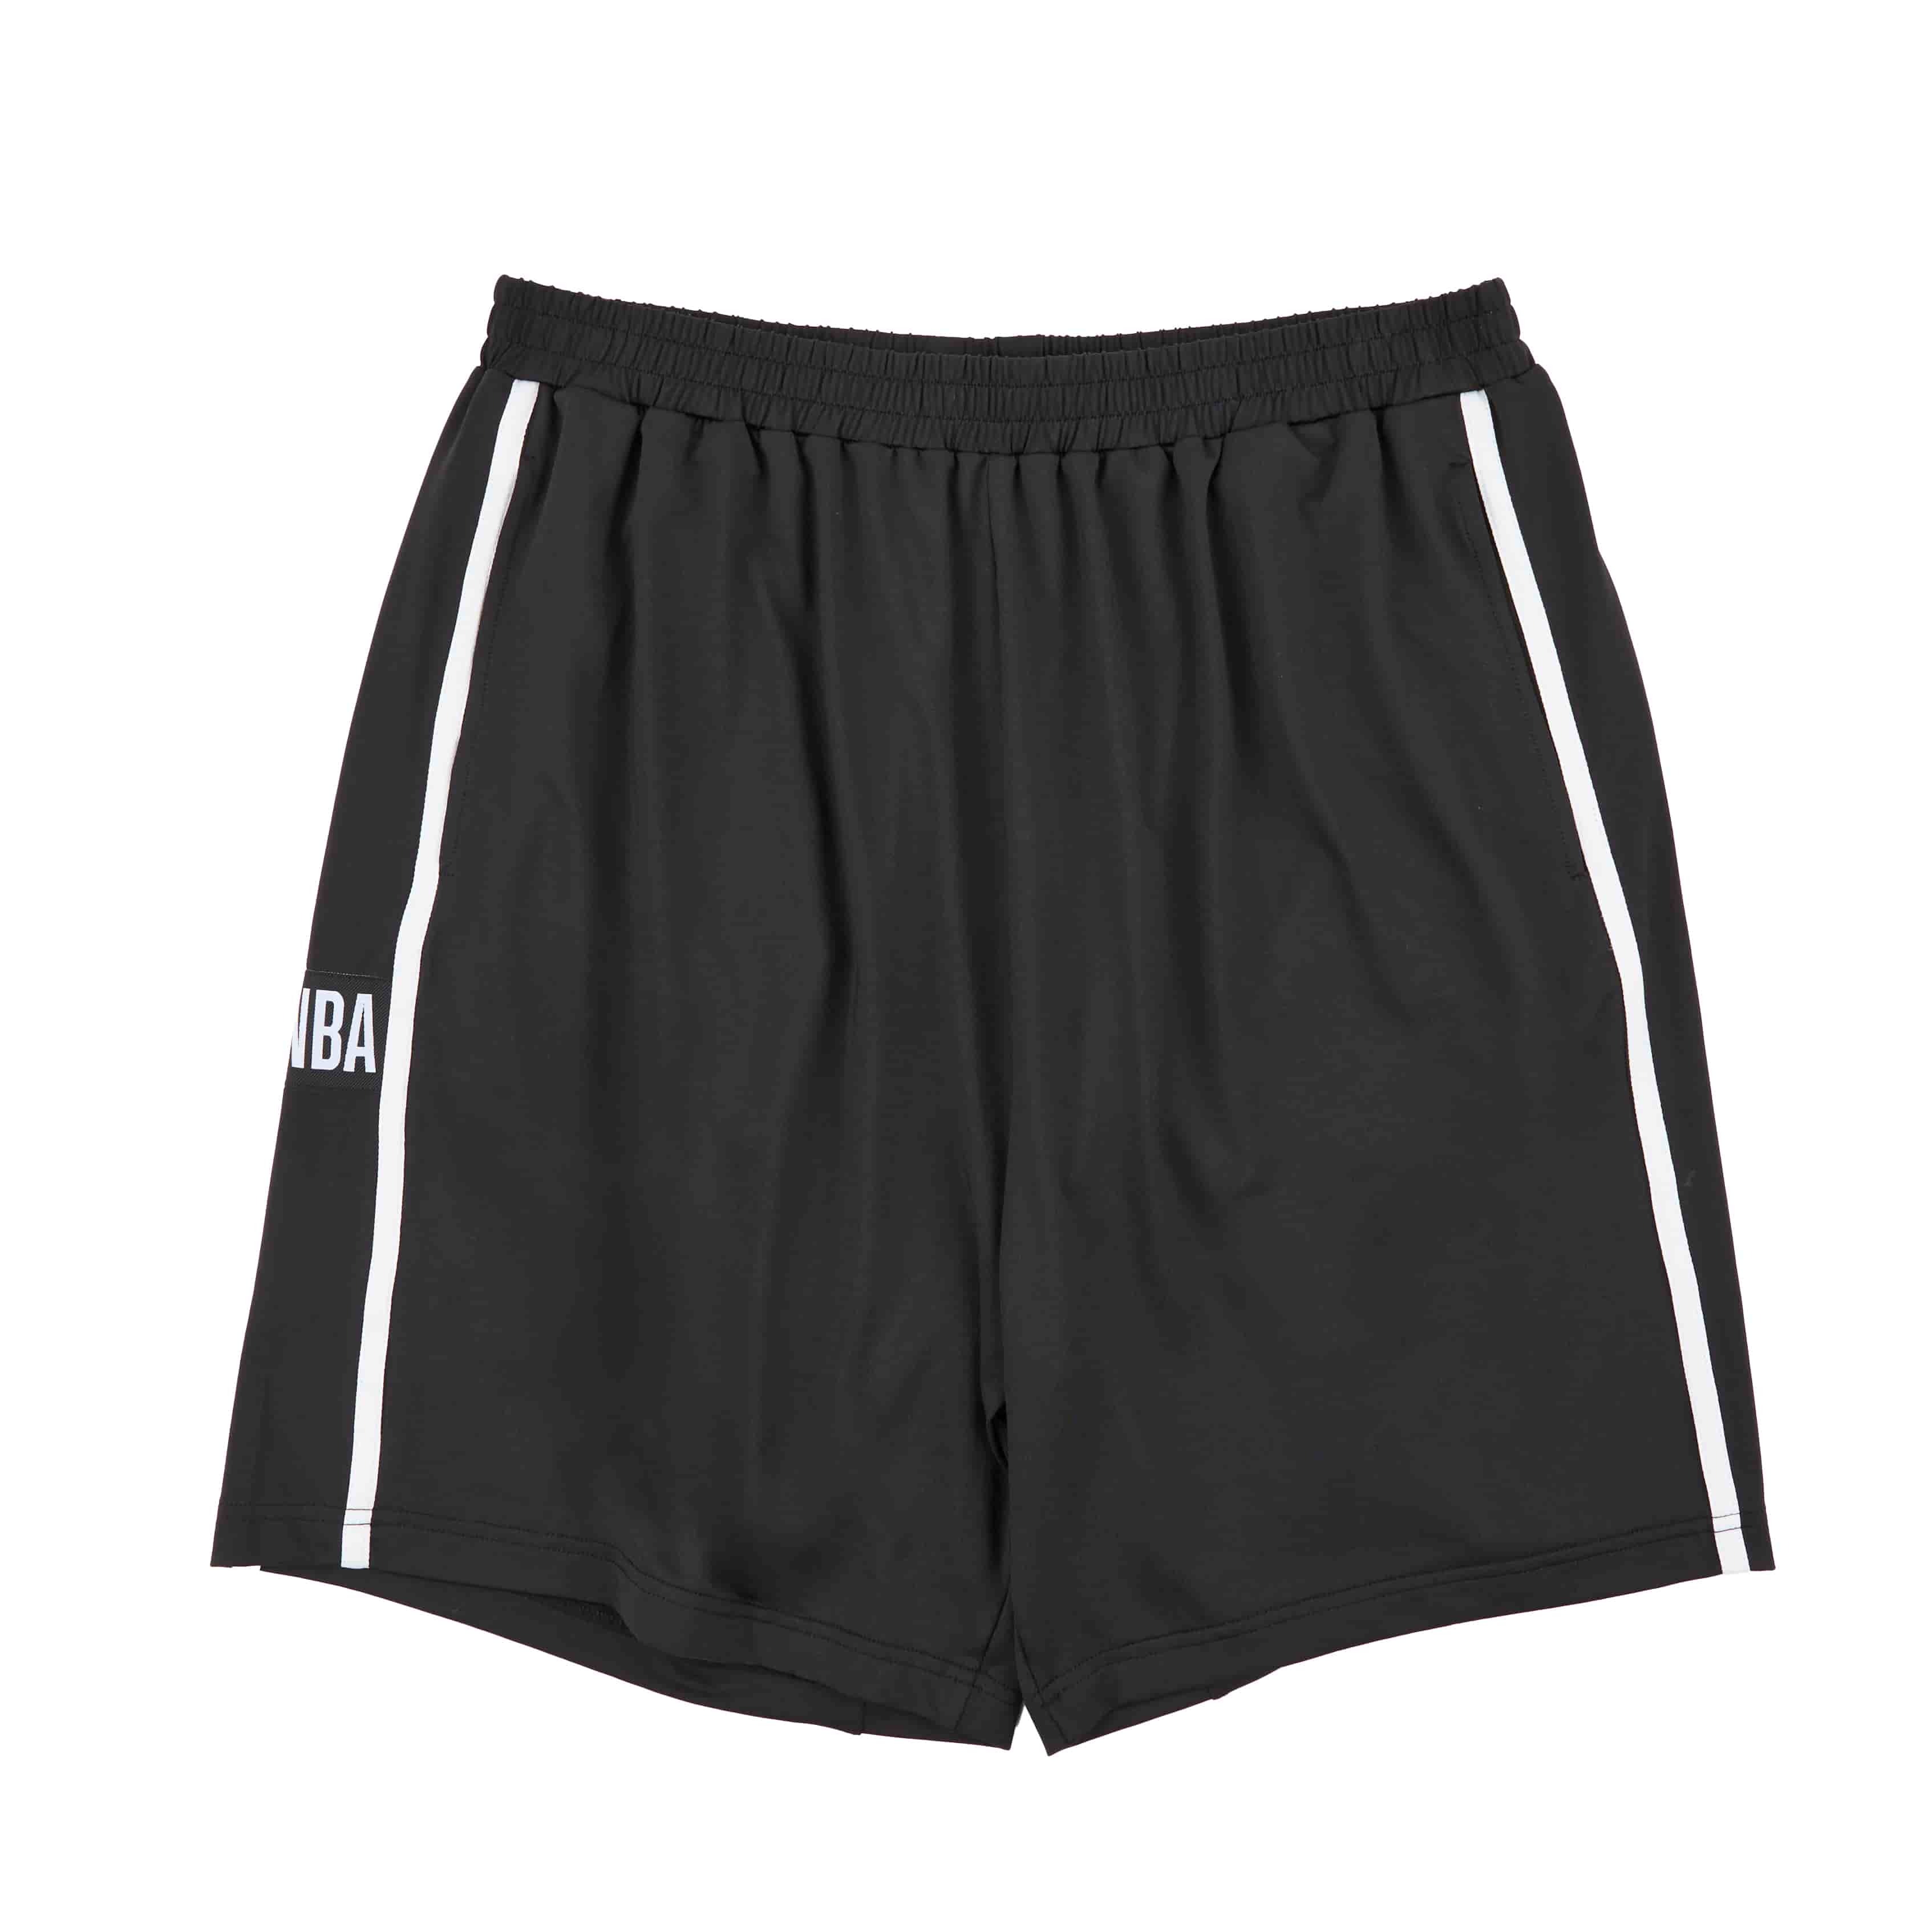 【NBA】休閒織帶短褲 - 淺灰/黑